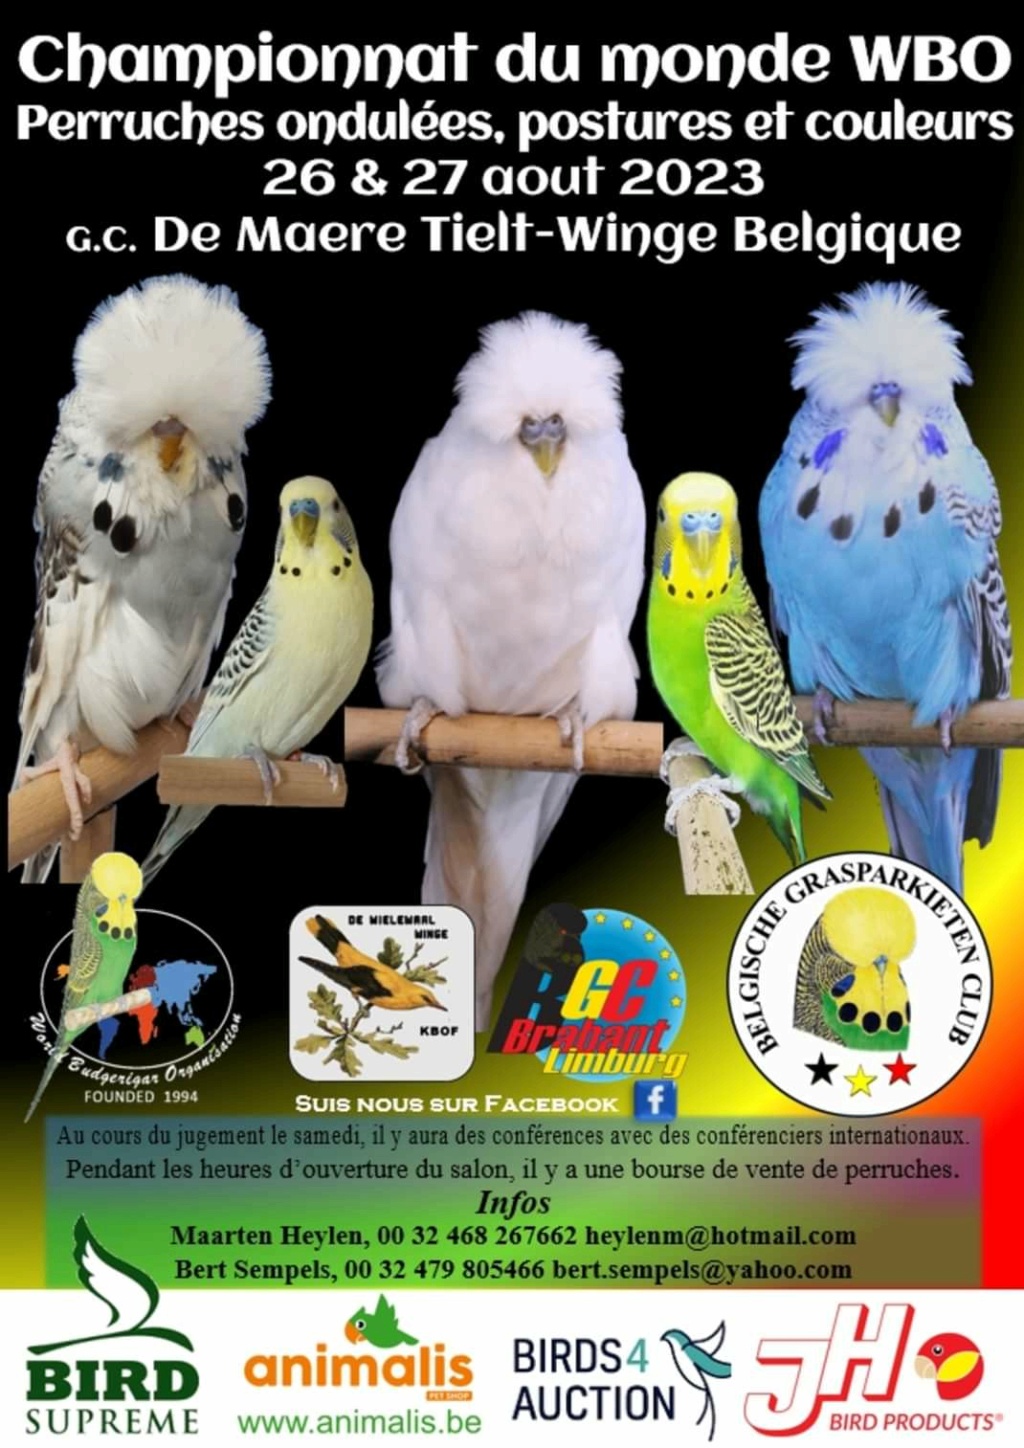 Tielt-Winge (Belgique) - (Championnat du monde des perruches ondulées) Img_1_83